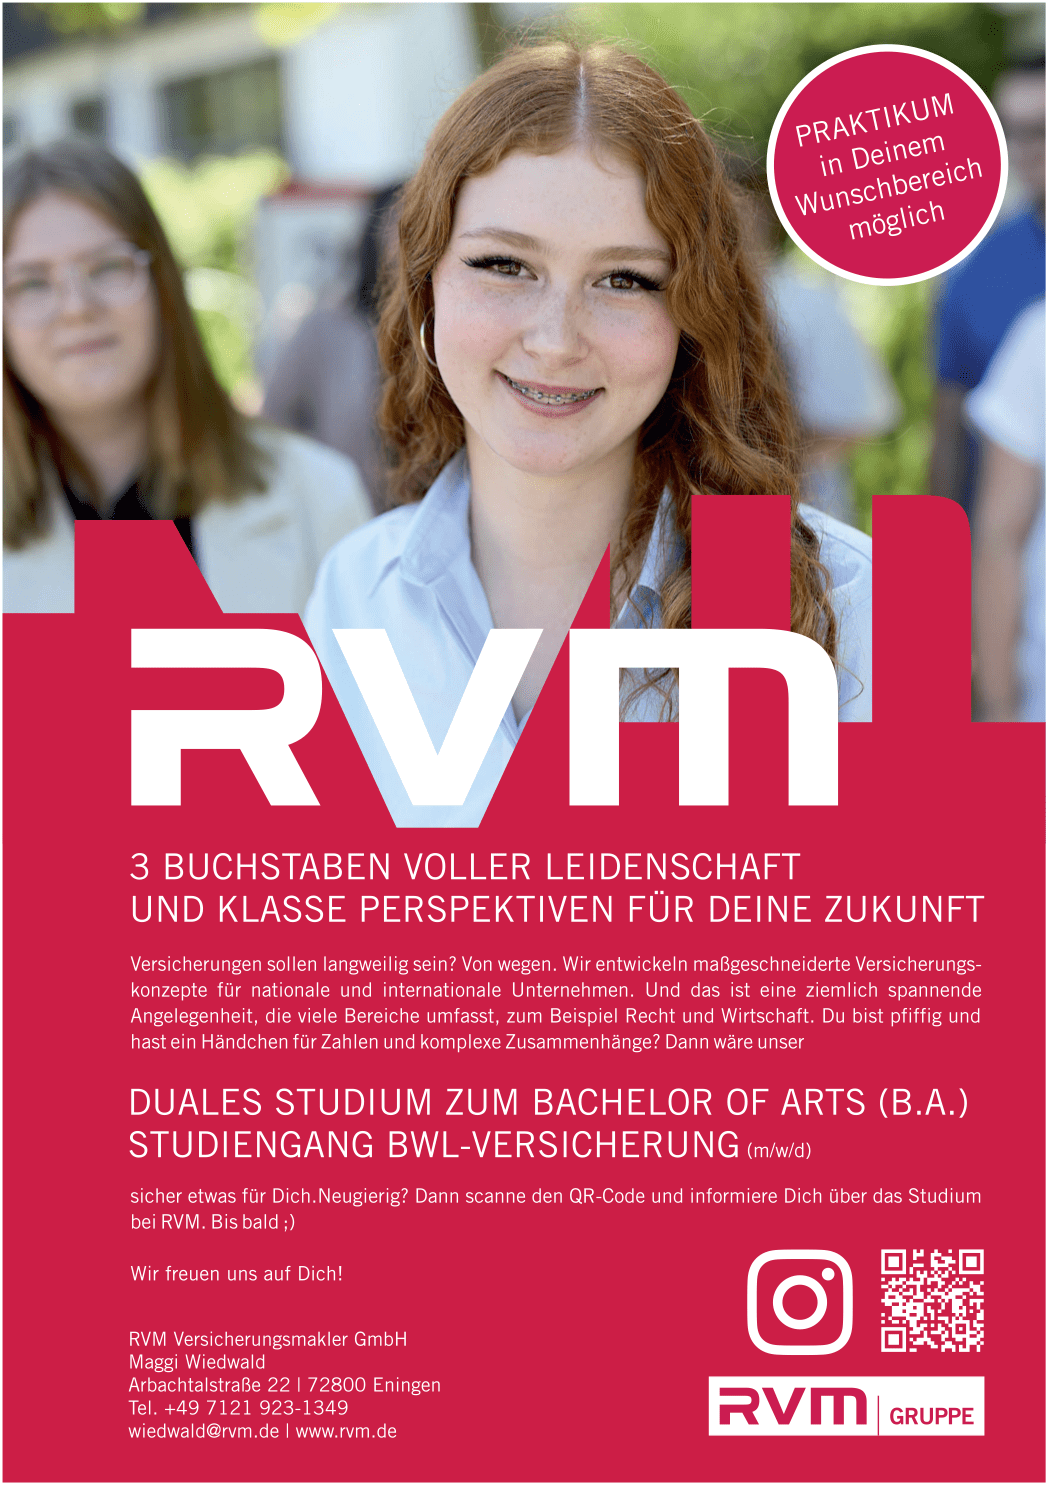 Bachelor of Arts (B.A.) - BWL-Versicherung (m/w/d) | RVM Versicherungsmakler GmbH